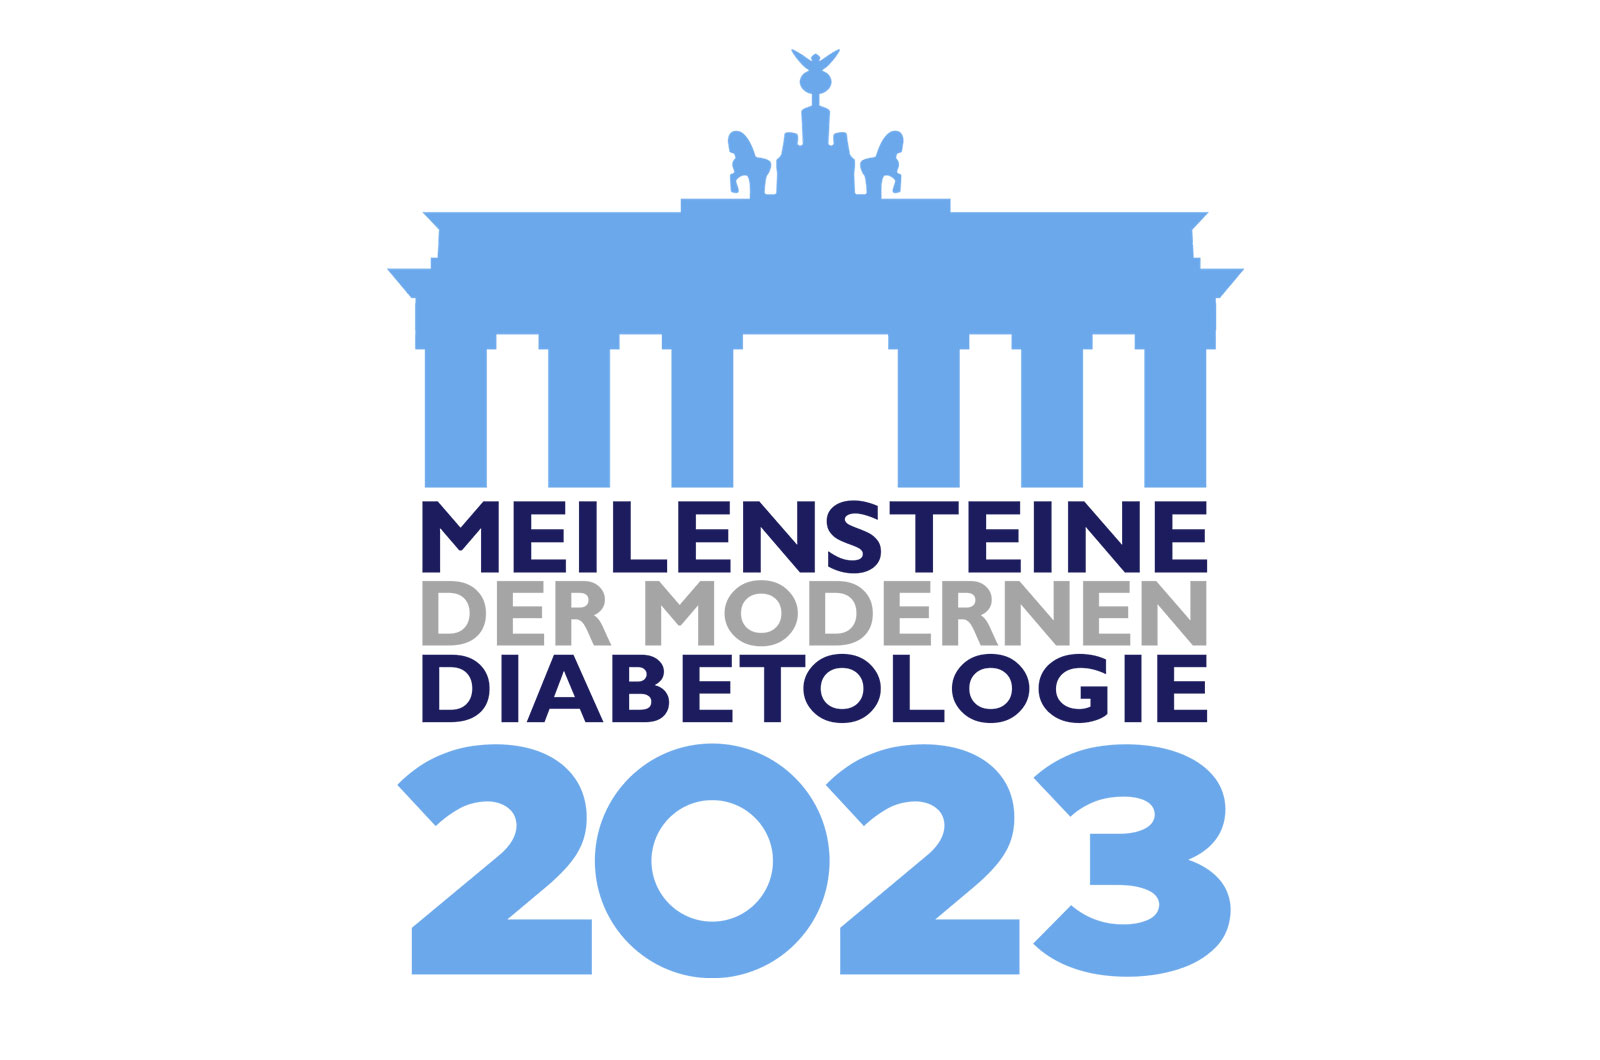 Meilensteine der modernen Diabetologie 2023